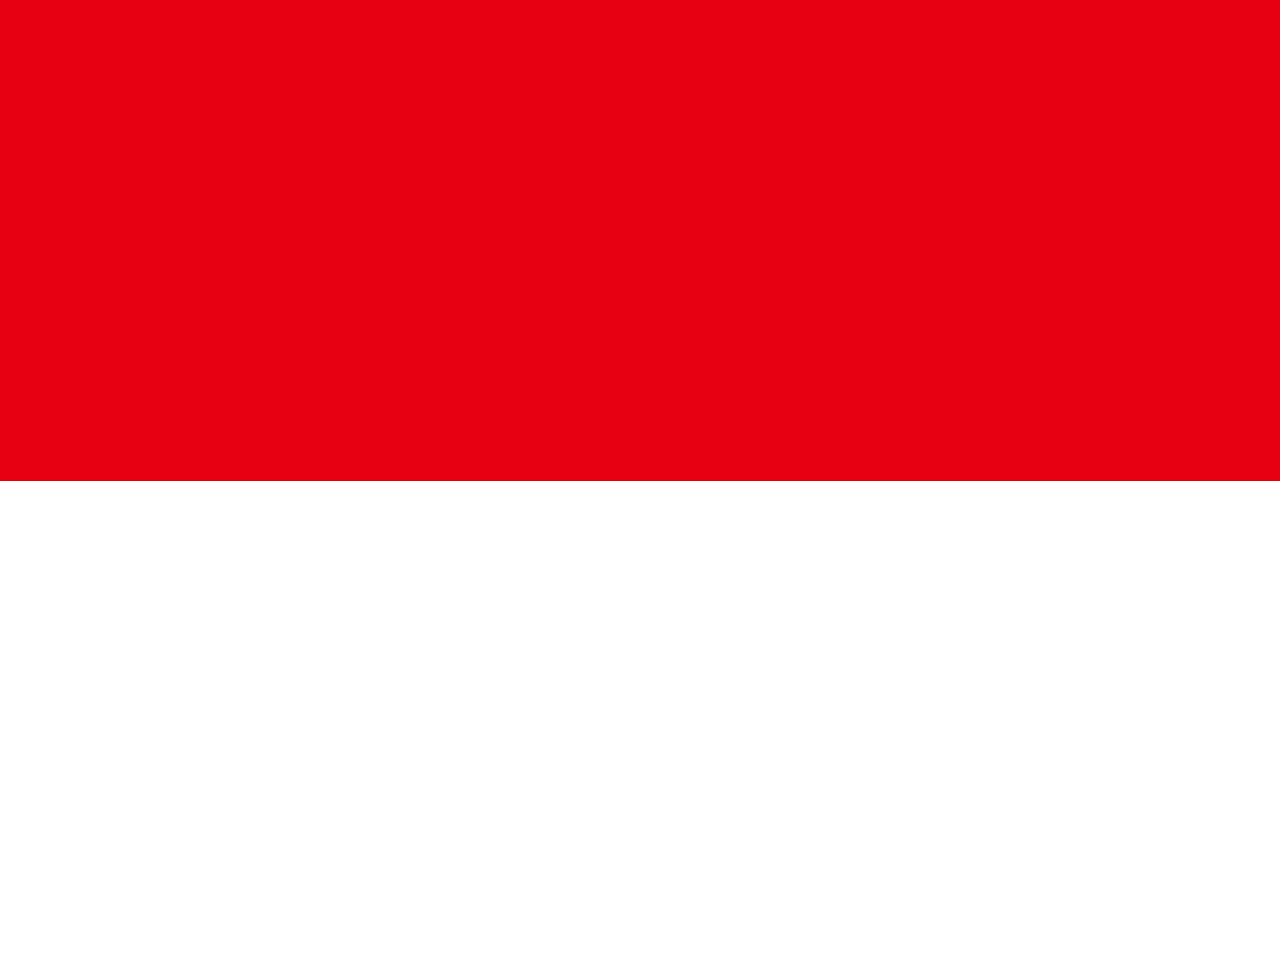 negara terbesar di Asia Tenggara, Indonesia